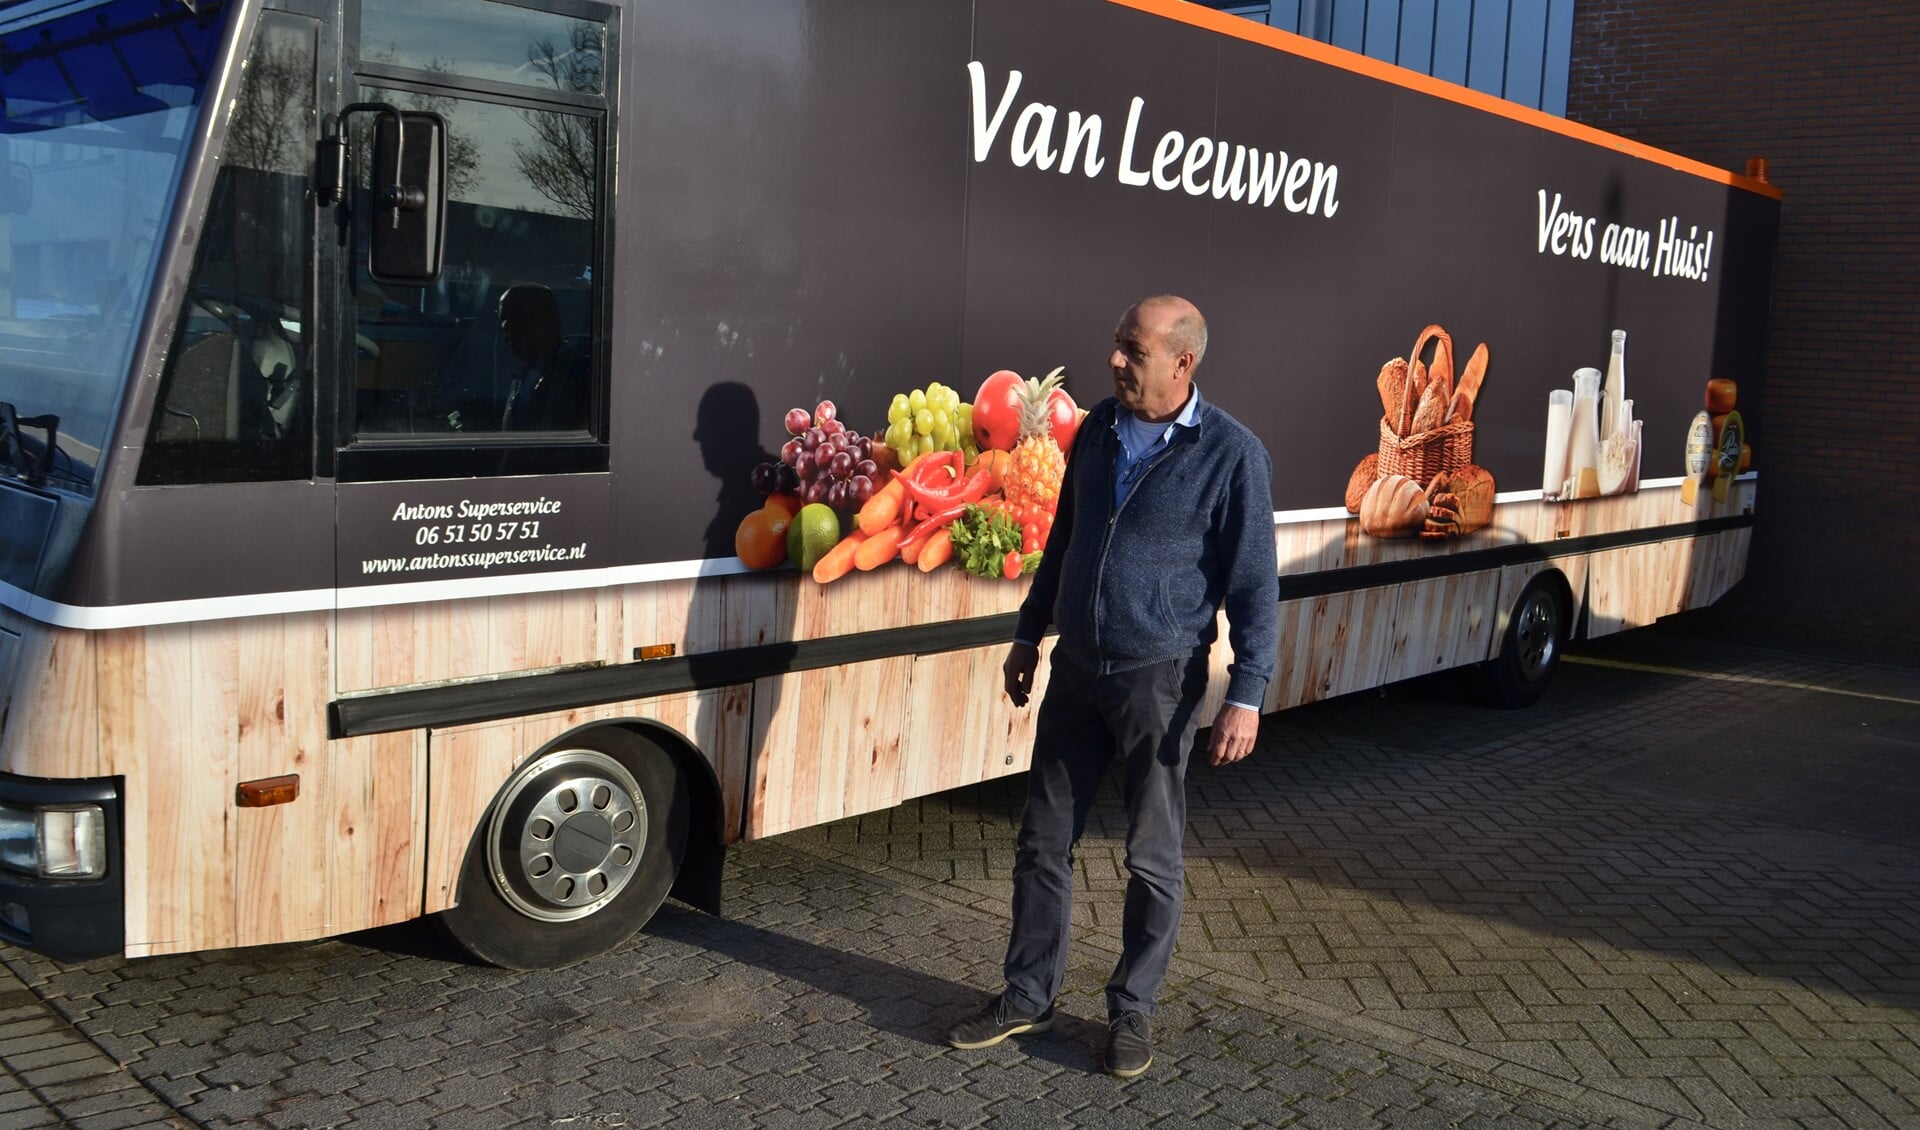 Anton van Leeuwen van Antons Superservice rijdt vanaf 22 november in zijn nieuwe rijdende winkel door de gemeente (Foto: Inge Koot).